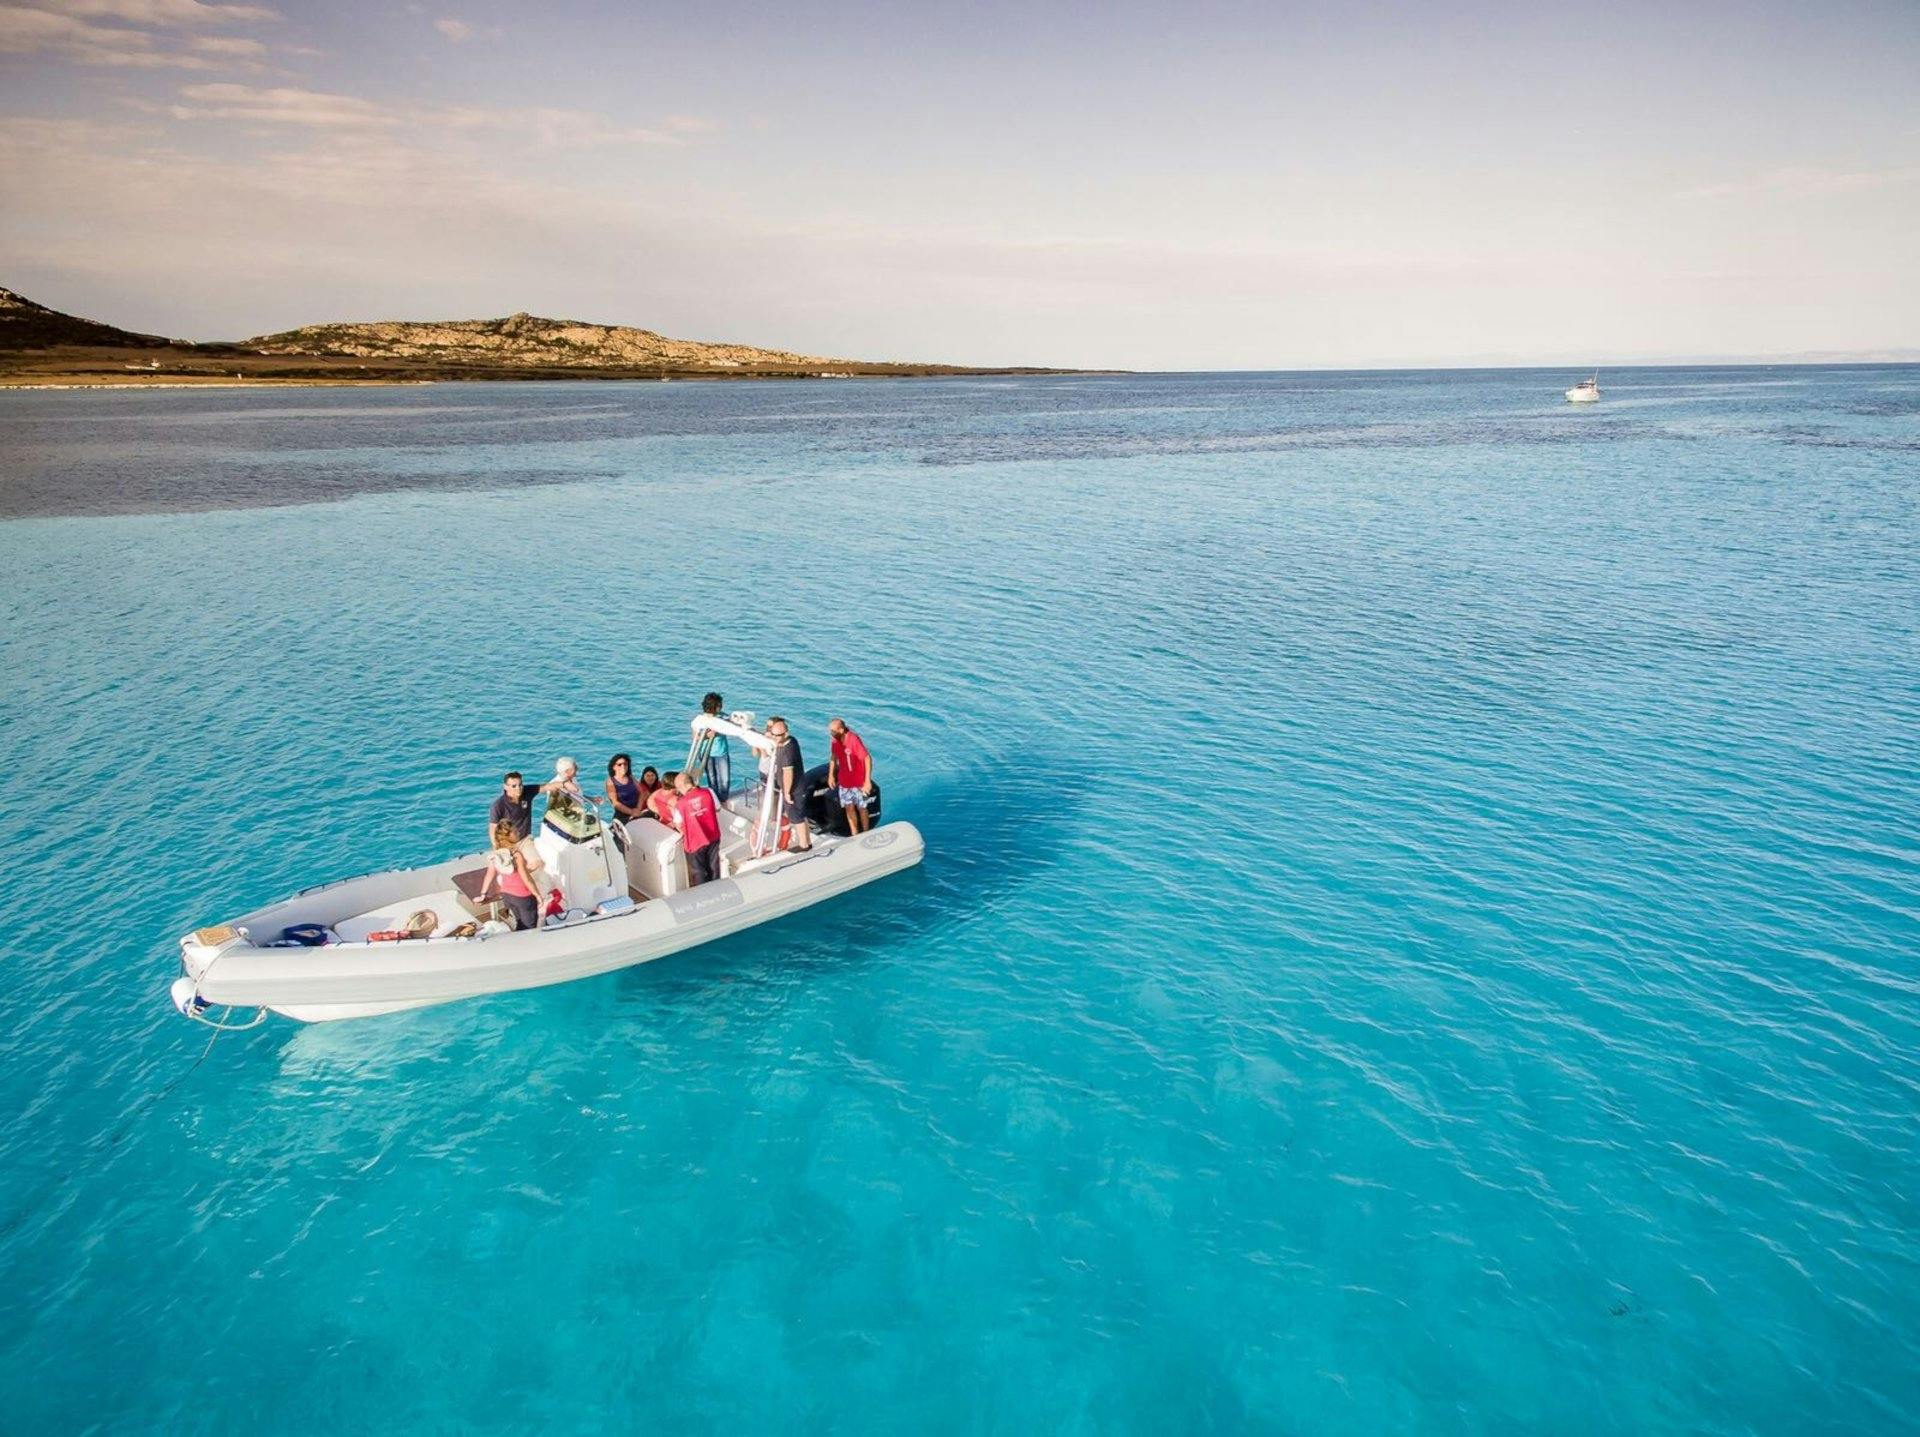 Halbtägige Schlauchboottour im Golf von Asinara ab Stintino